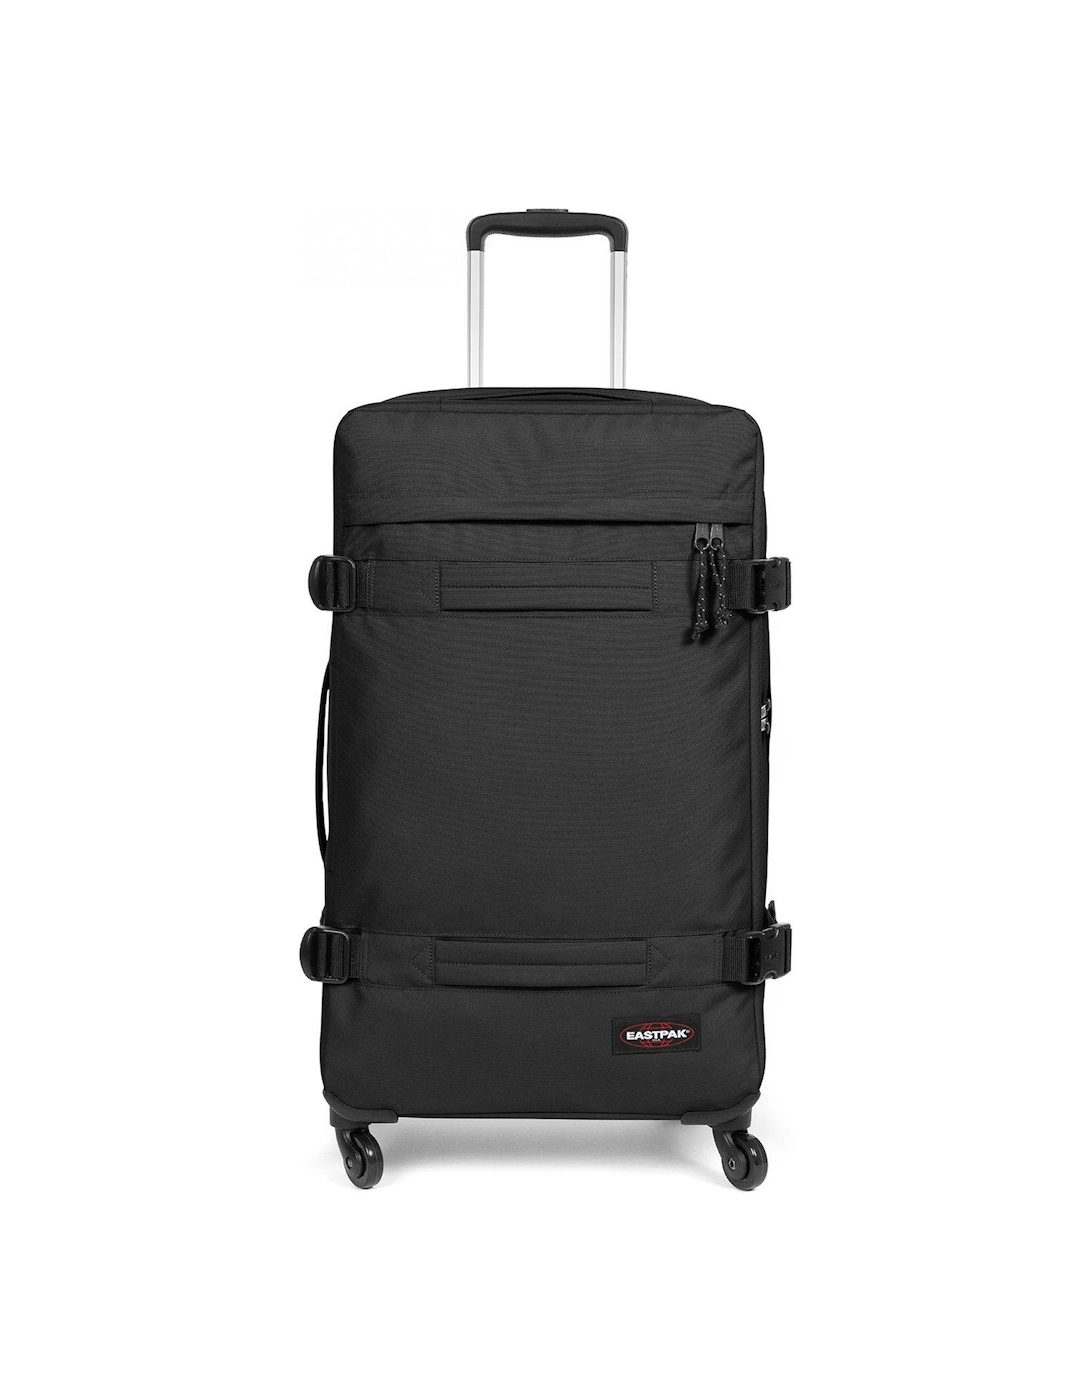 TRANSIT'R 4-Wheel Suitcase - Large, 2 of 1